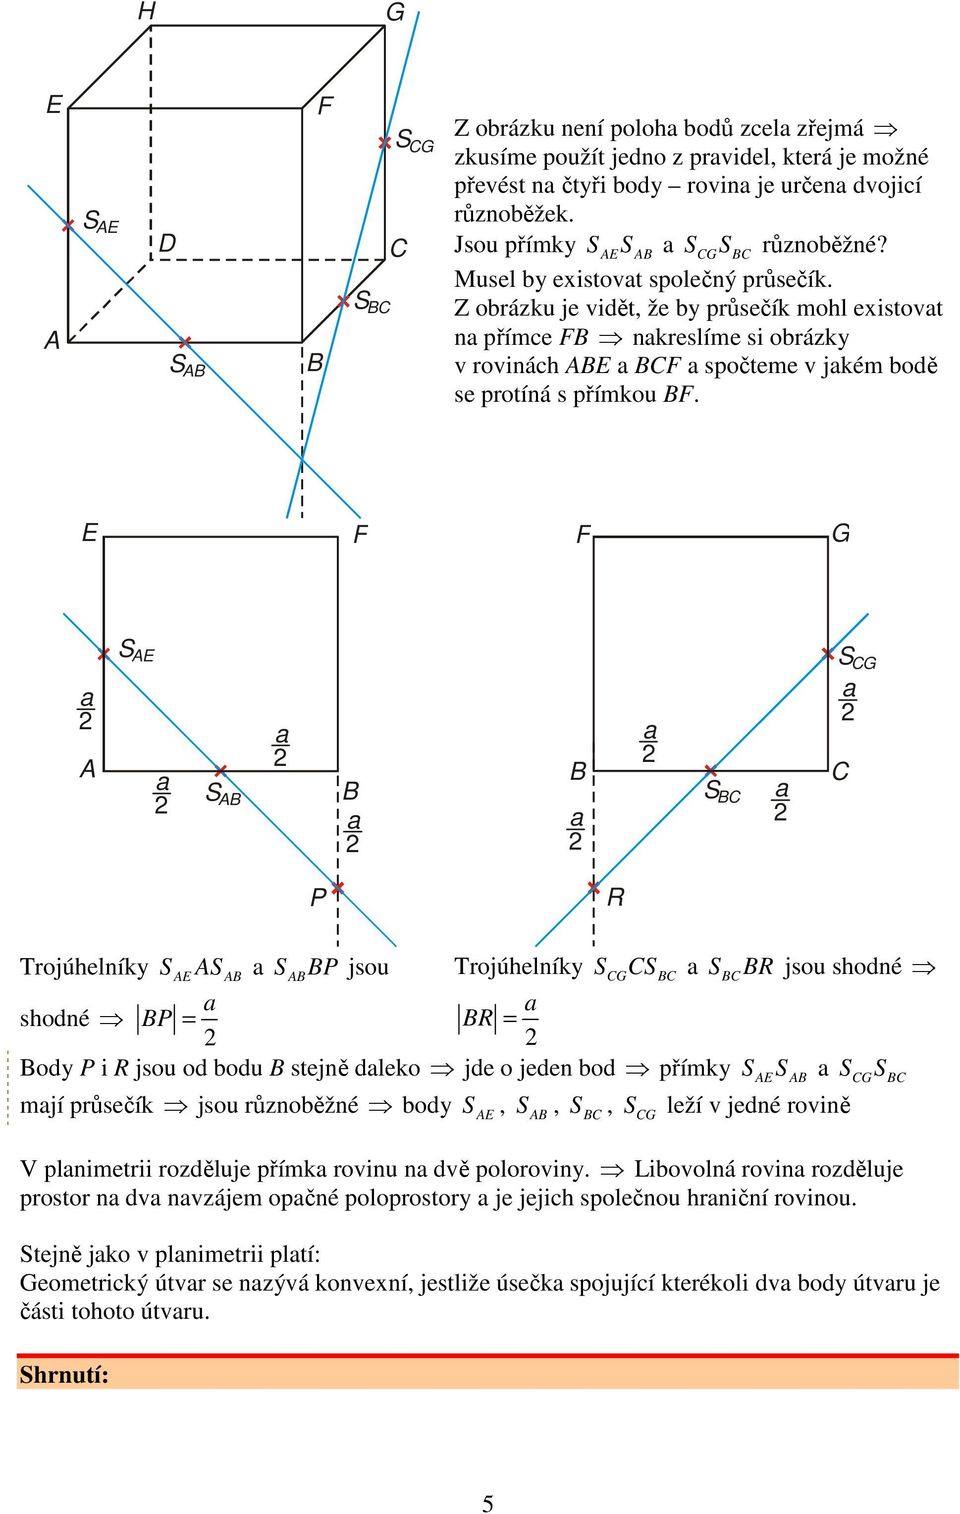 S S S S P R Trojúhelníky S S S P jsou Trojúhelníky SS SR jsou shodné shodné P = R = ody P i R jsou od bodu stejně dleko jde o jeden bod přímky SS SS mjí průsečík jsou různoběžné body S leží v jedné